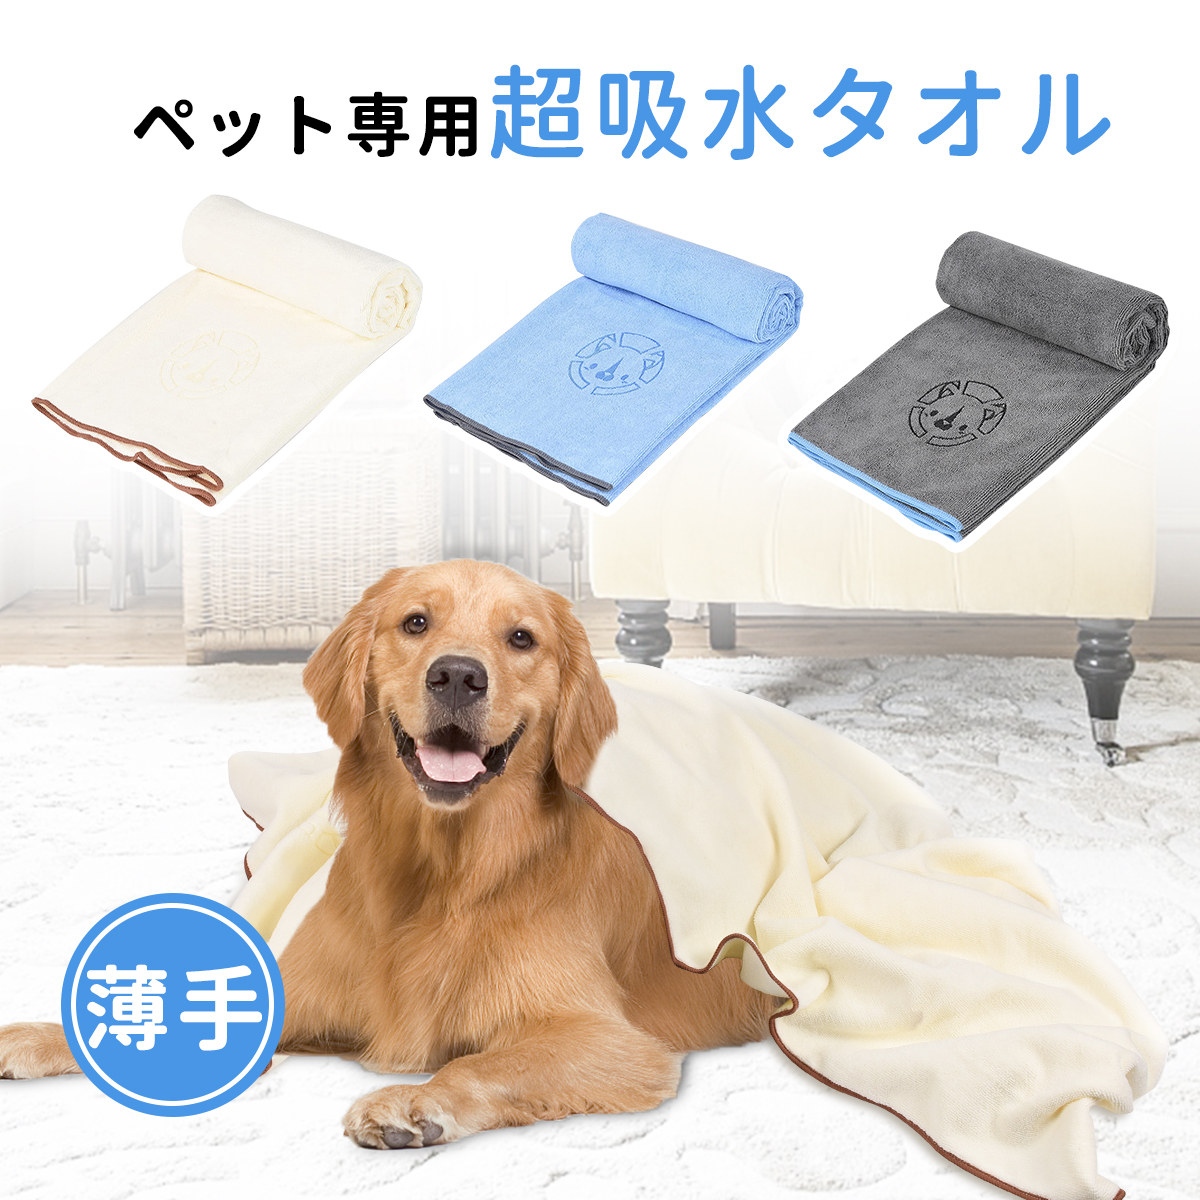 【楽天市場】タオル 超吸水 ペットタオル バスタオル ペット用 